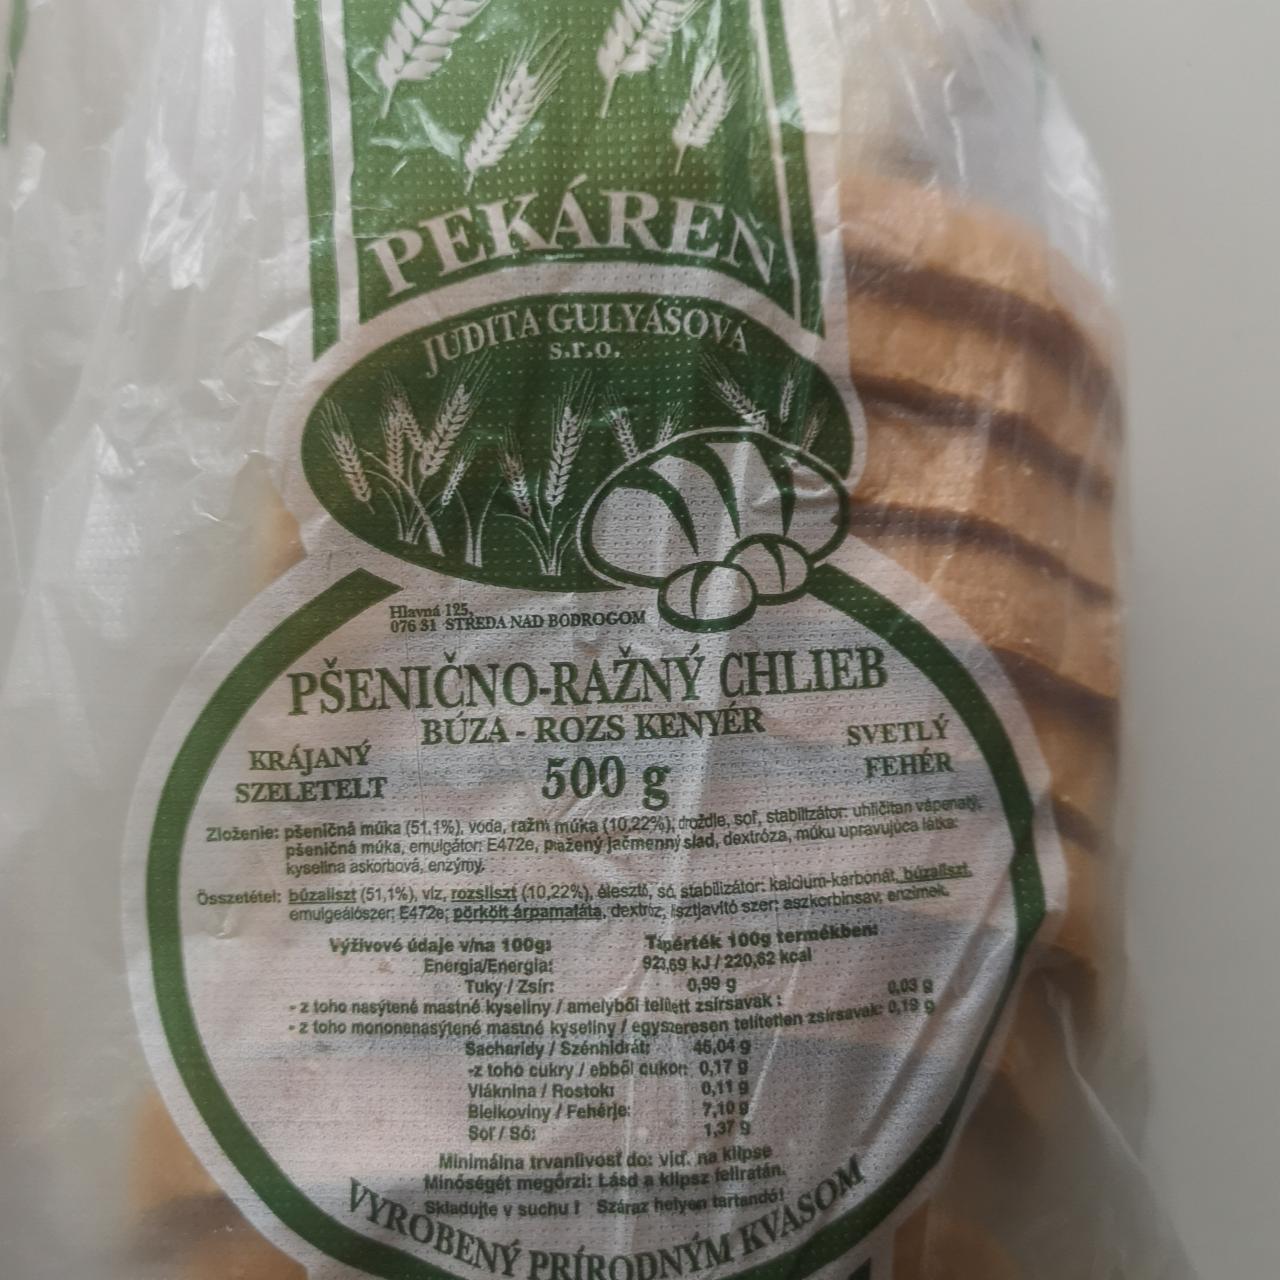 Fotografie - Pšenično-ražný chlieb Pekáreň Judita Gulyásová